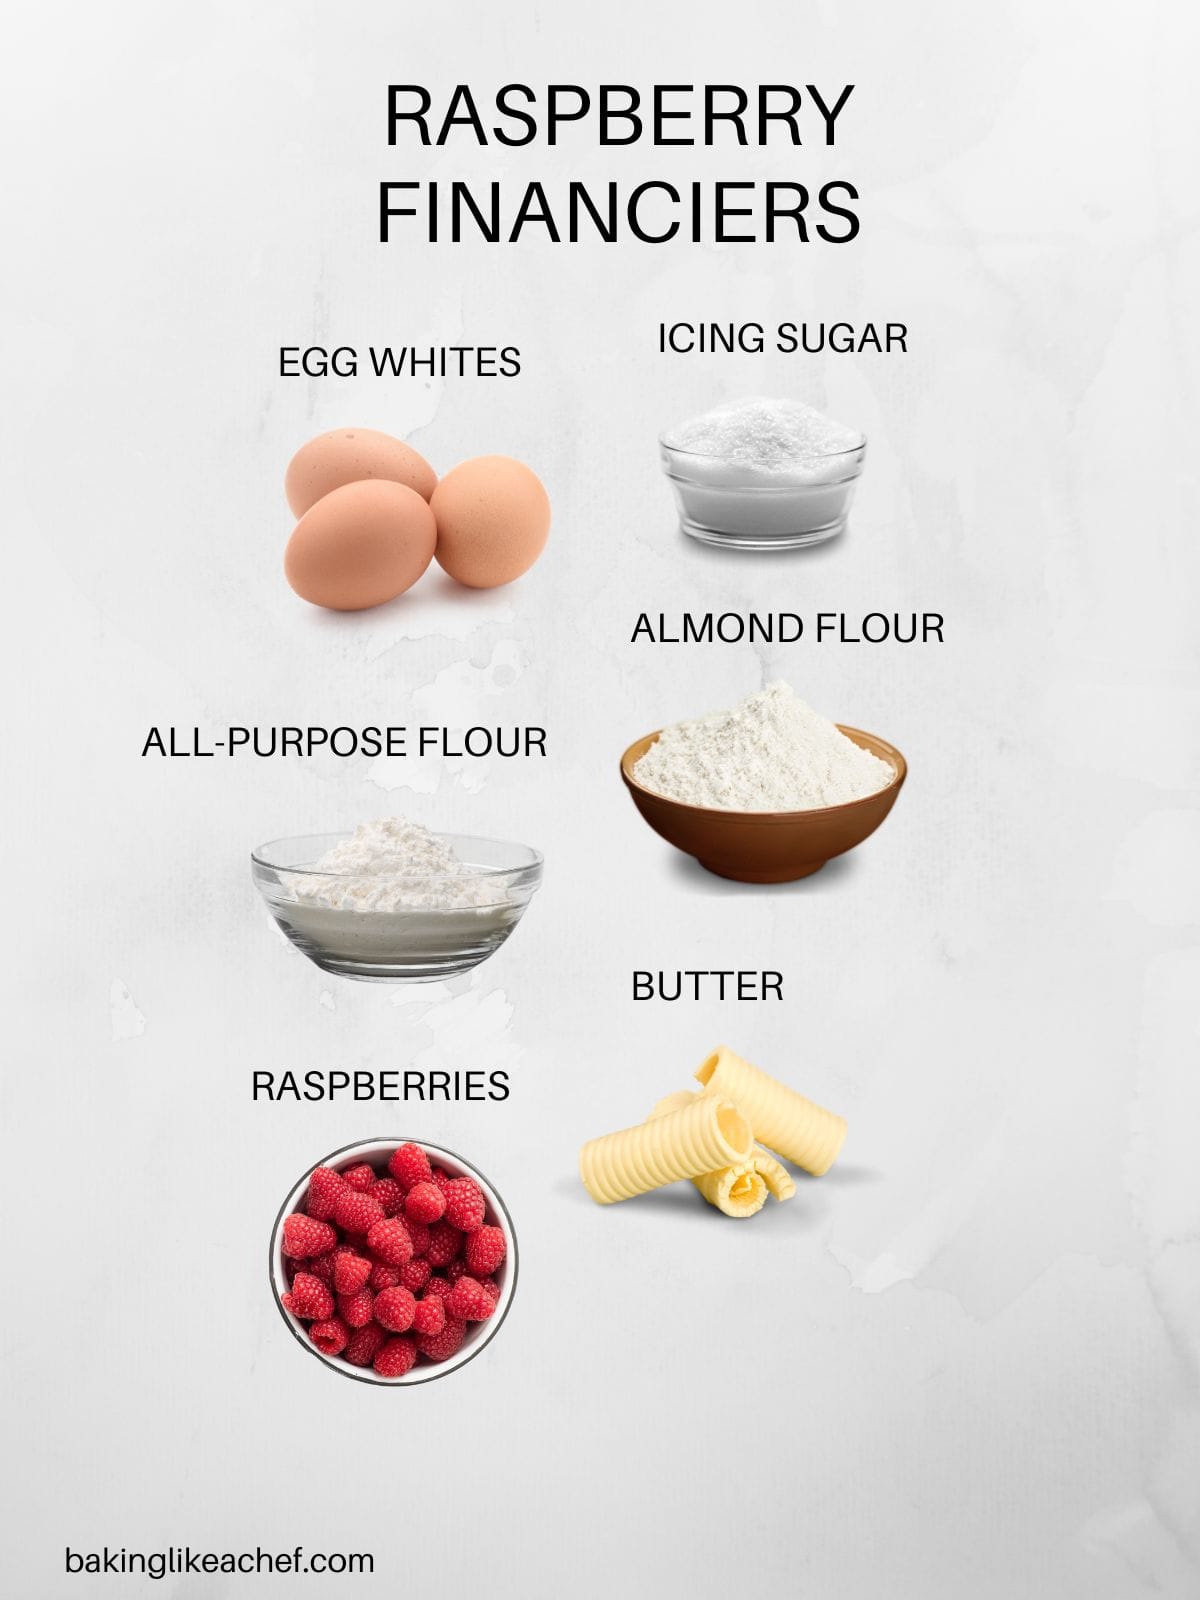 Raspberry financiers ingredients in pictures